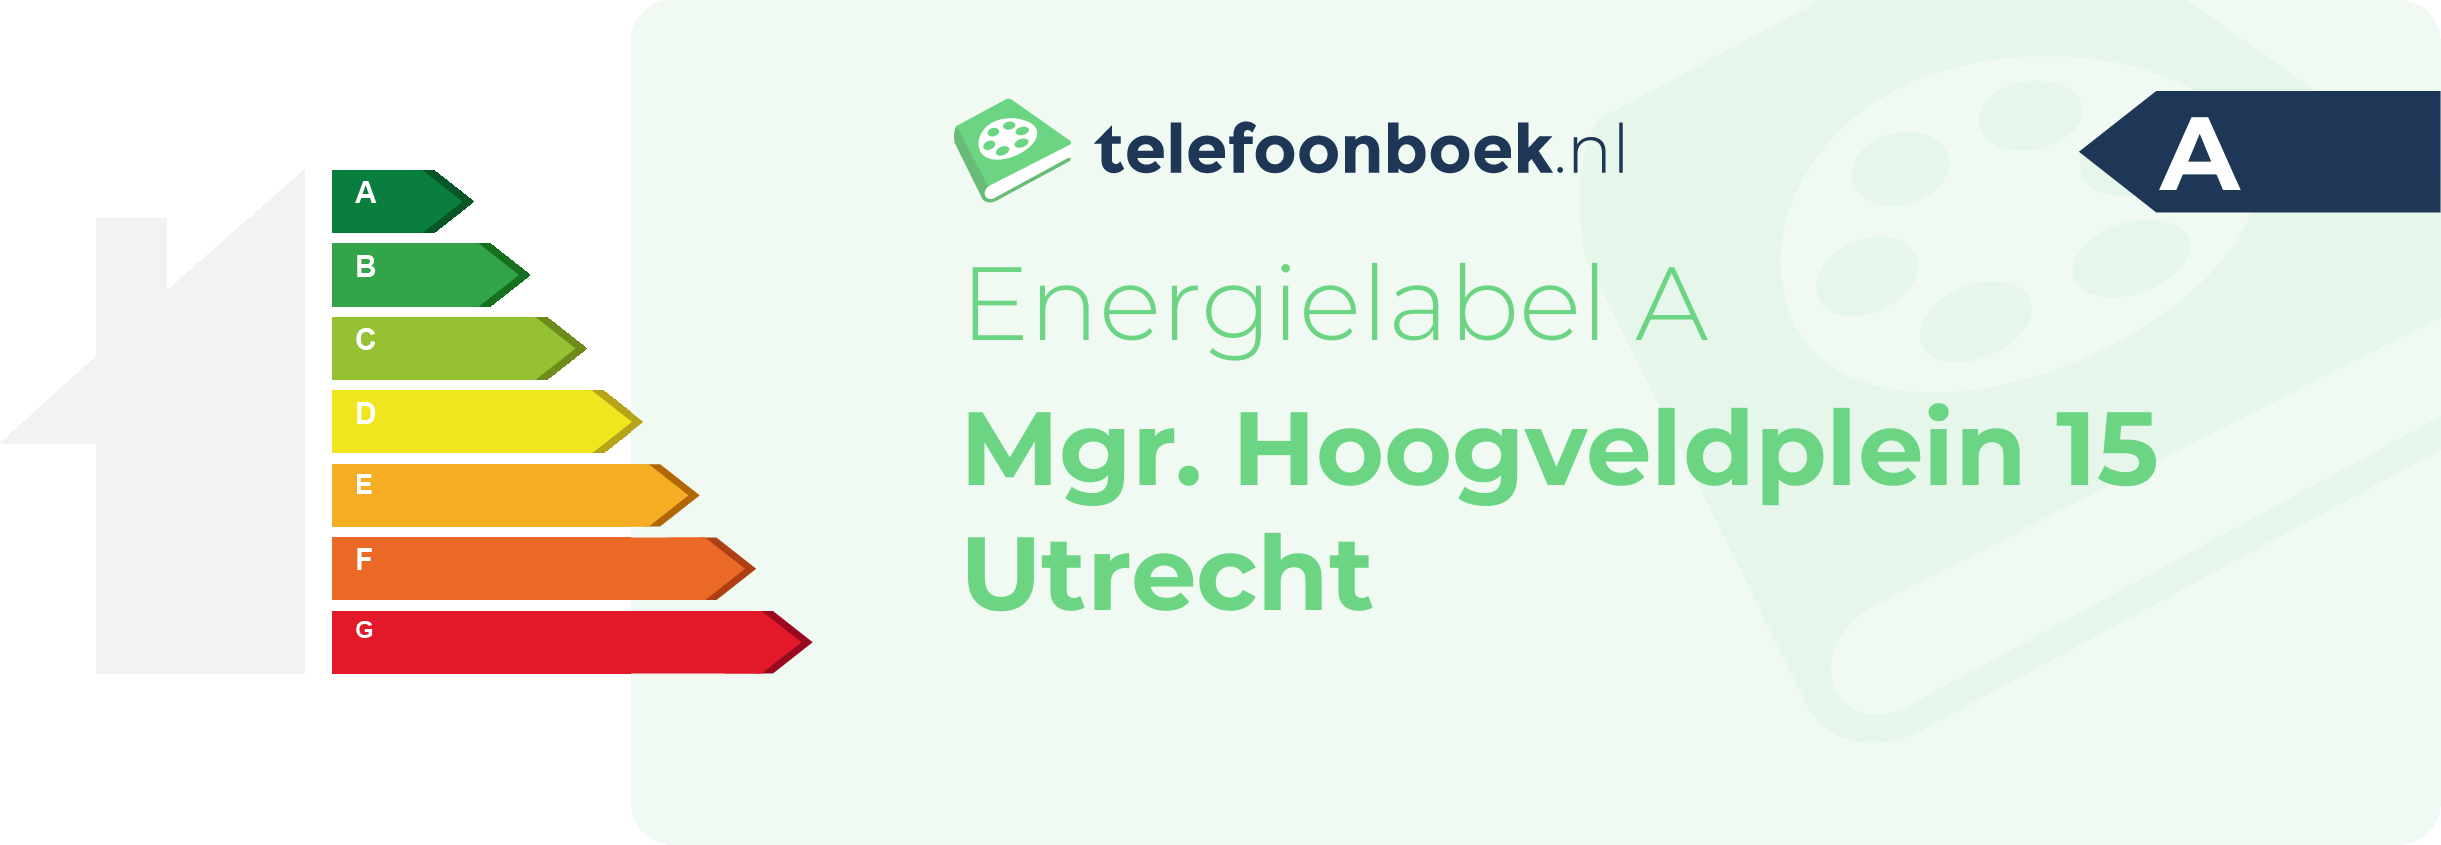 Energielabel Mgr. Hoogveldplein 15 Utrecht